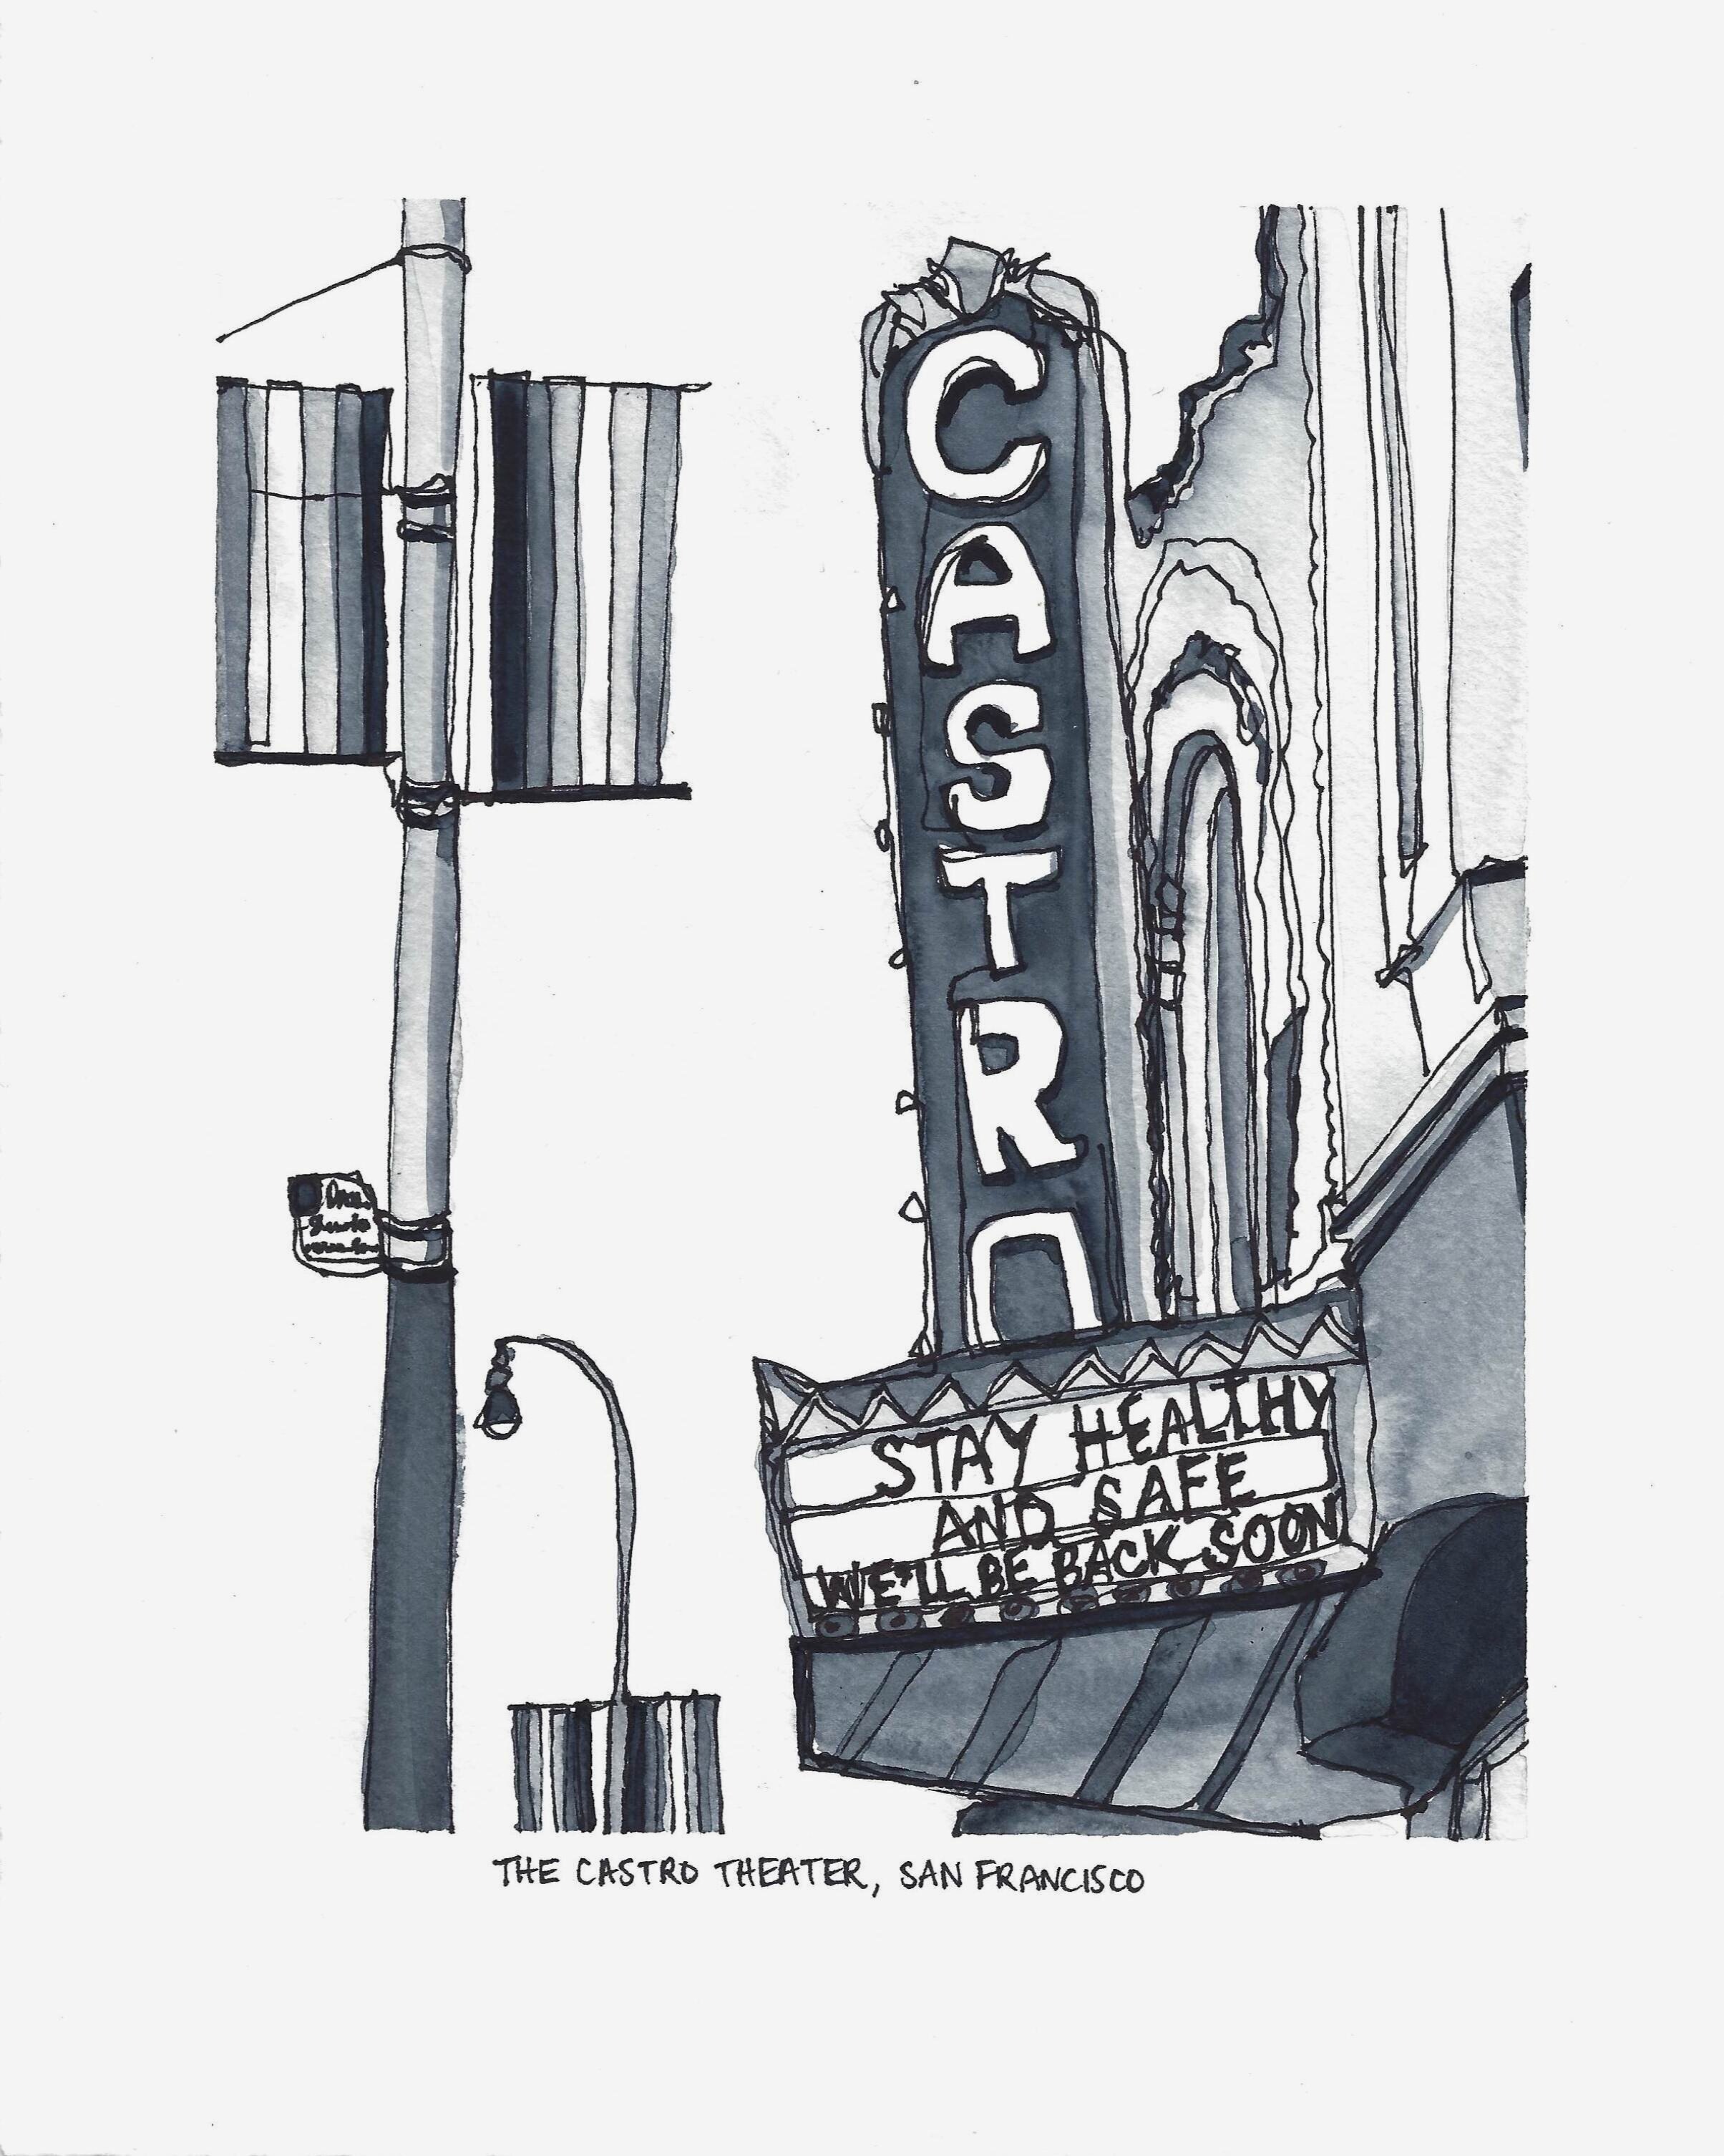 COVID-Closure Series; The Castro Theater, San Francisco